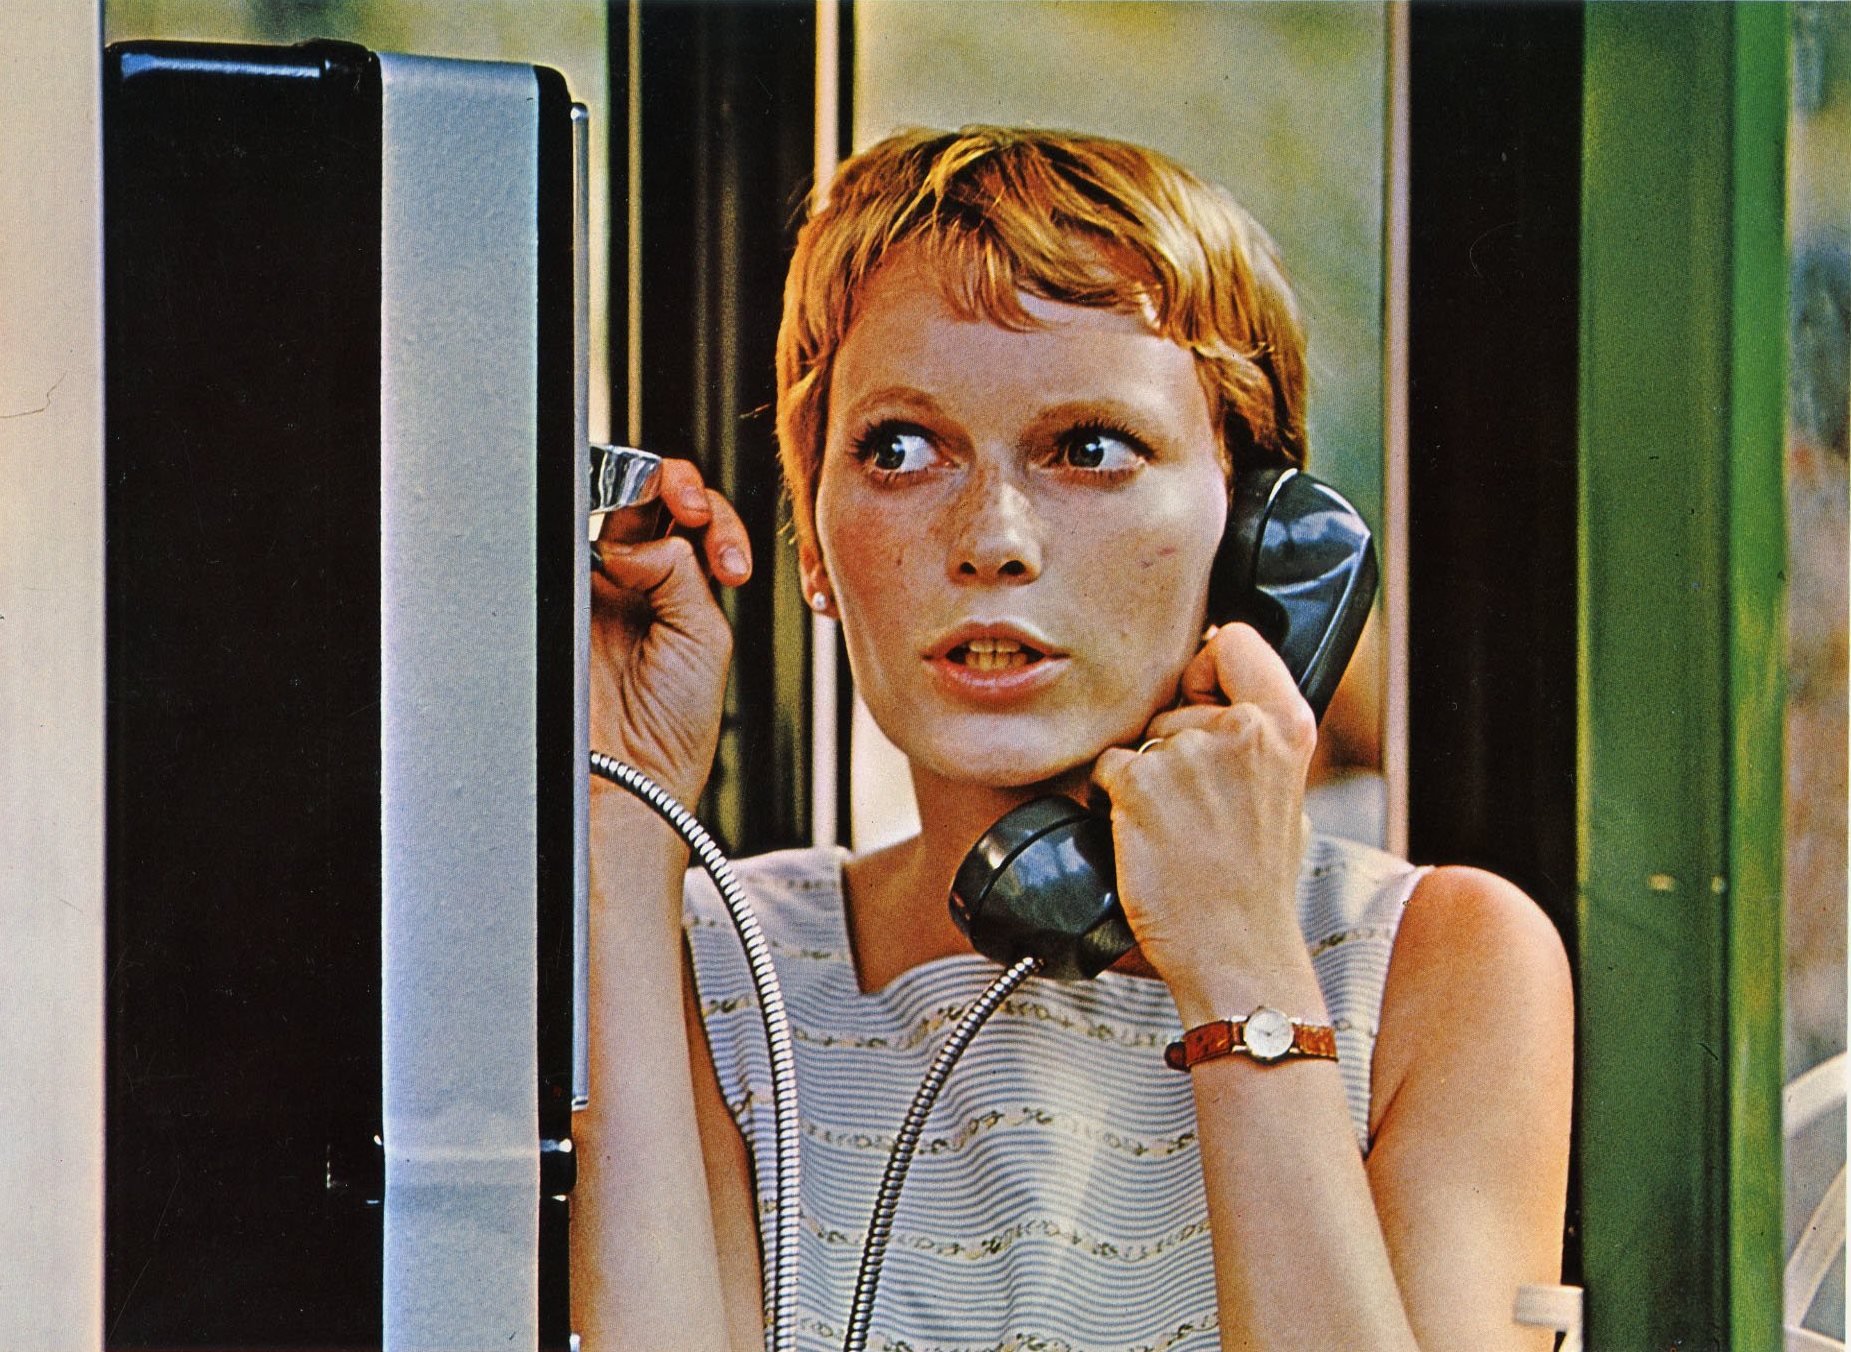 Rosemary (Mia Farrow) in Rosemary's Baby (1968)